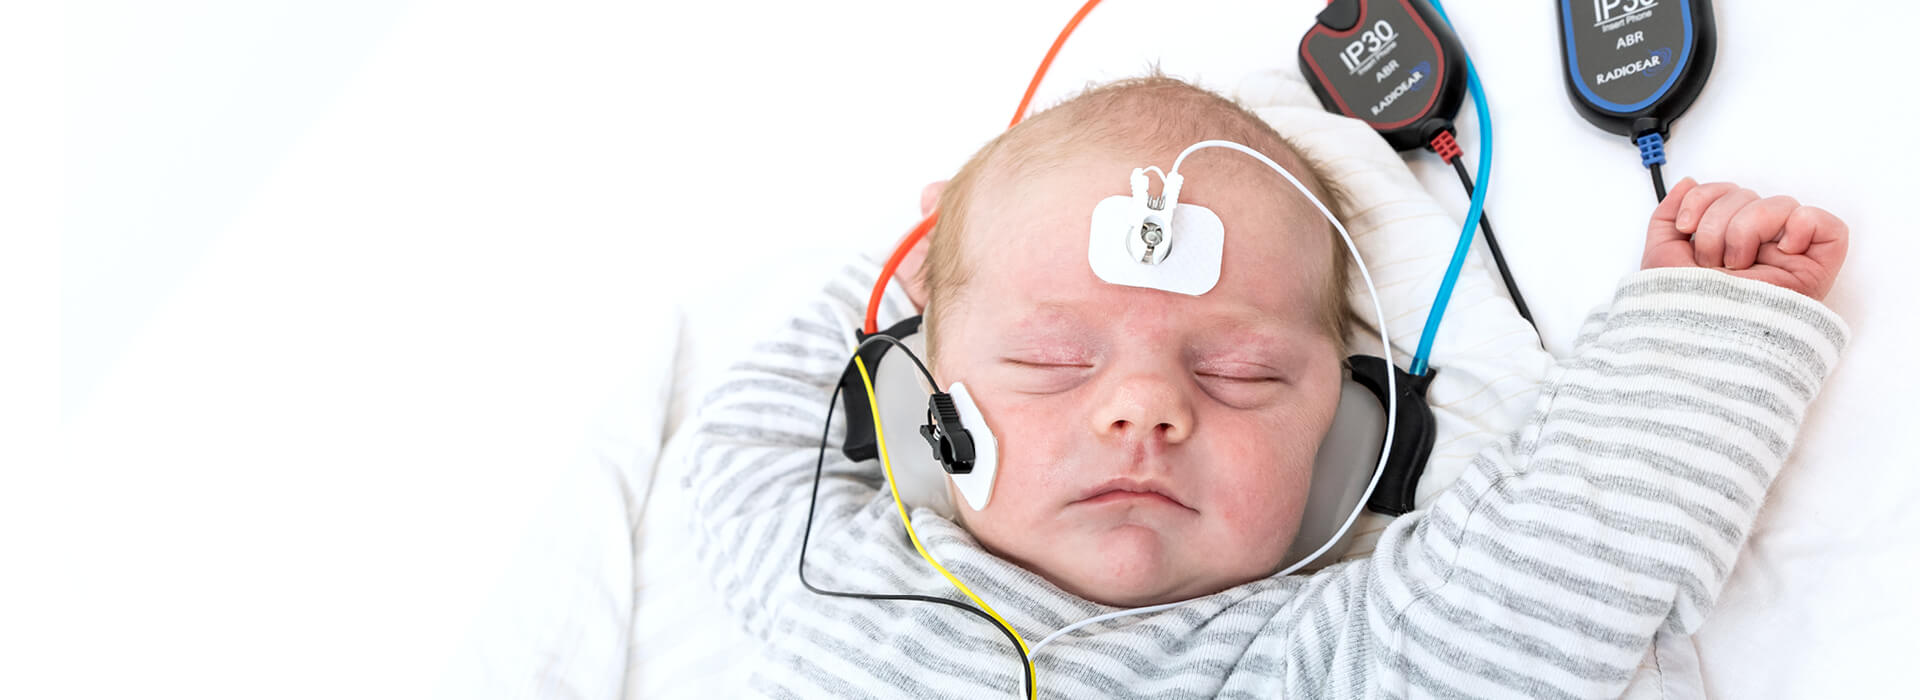 Sovende baby får foretaget høretest med OAE udstyr